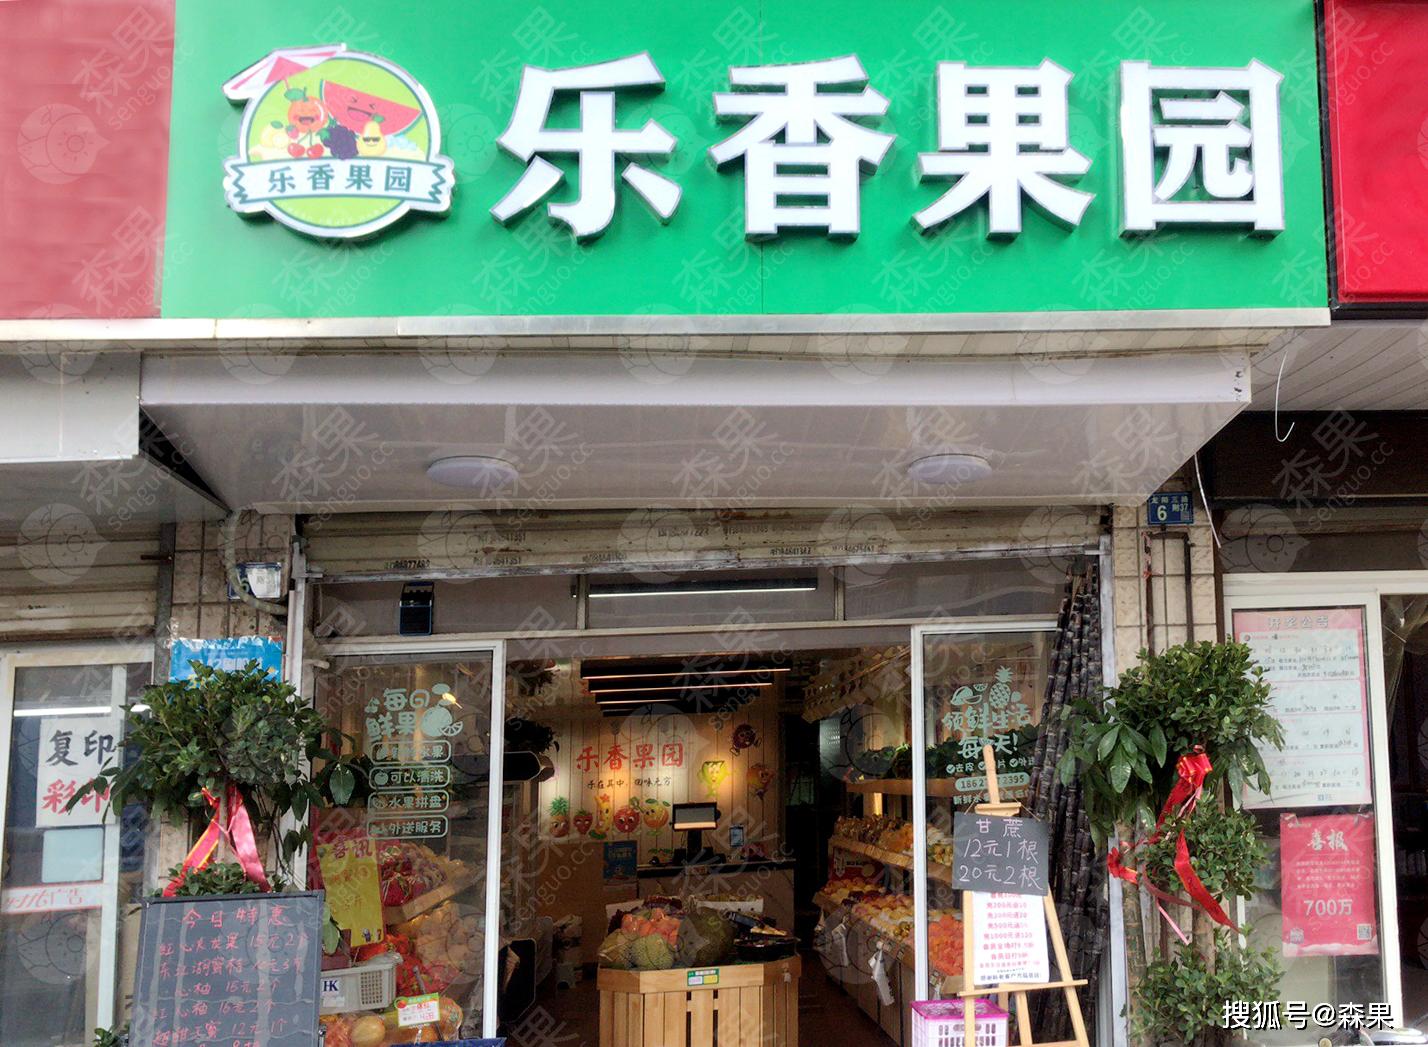 1/4乐香果园水果店招牌~可以看出店里是刚开业,祝老板生意兴隆,红红